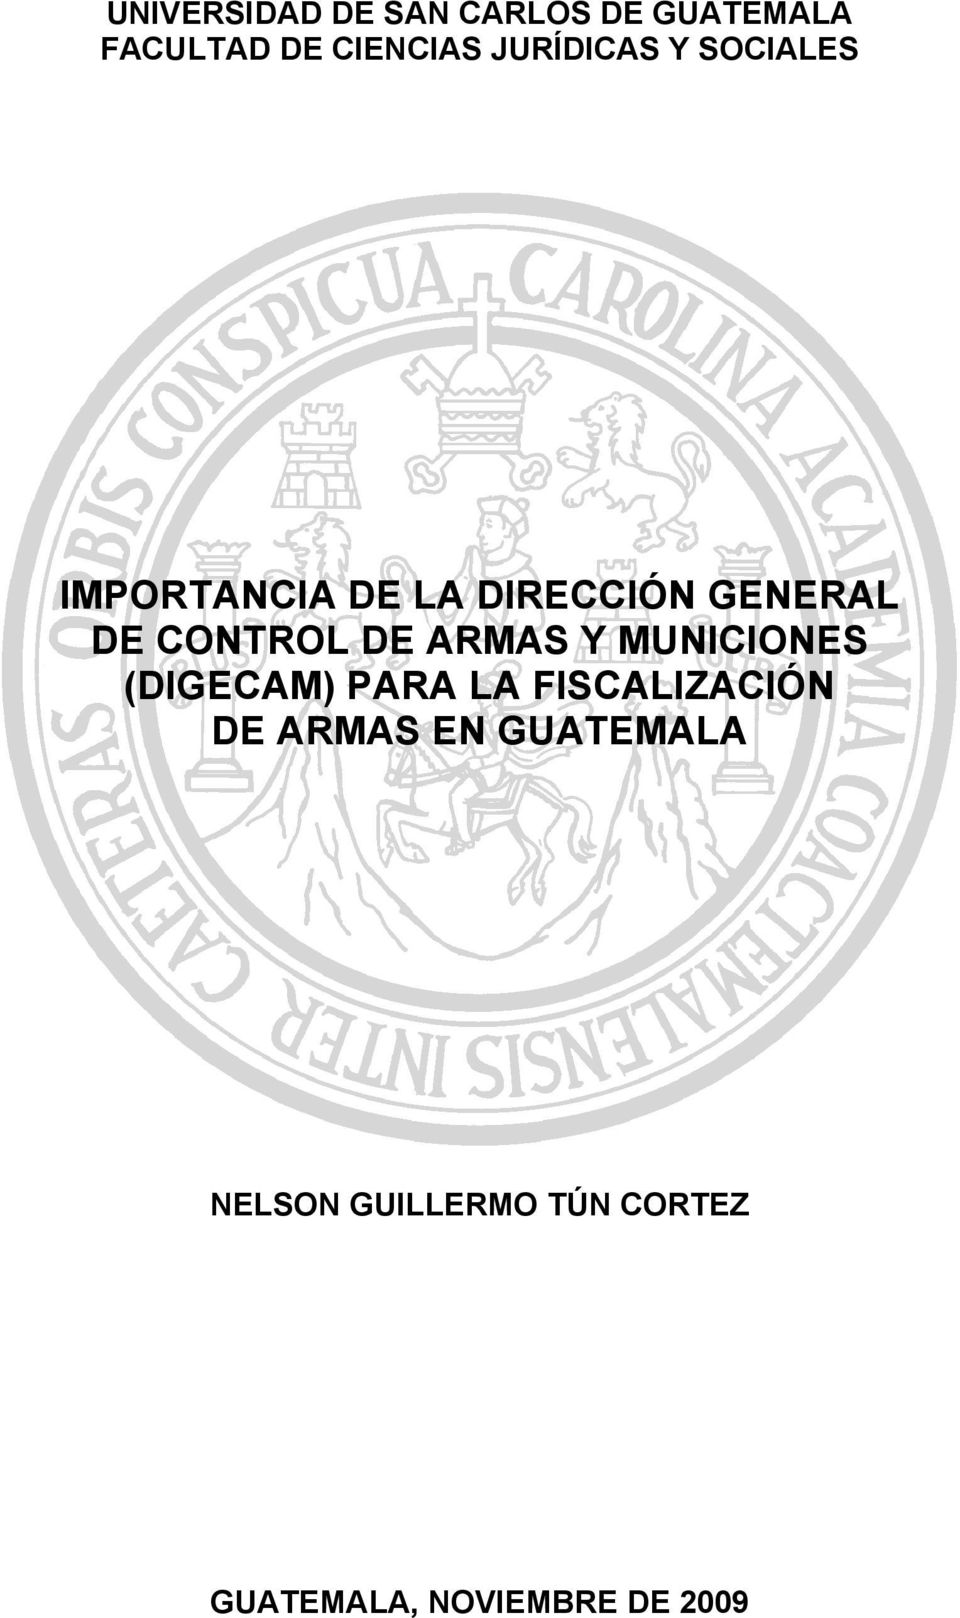 CONTROL DE ARMAS Y MUNICIONES (DIGECAM) PARA LA FISCALIZACIÓN DE